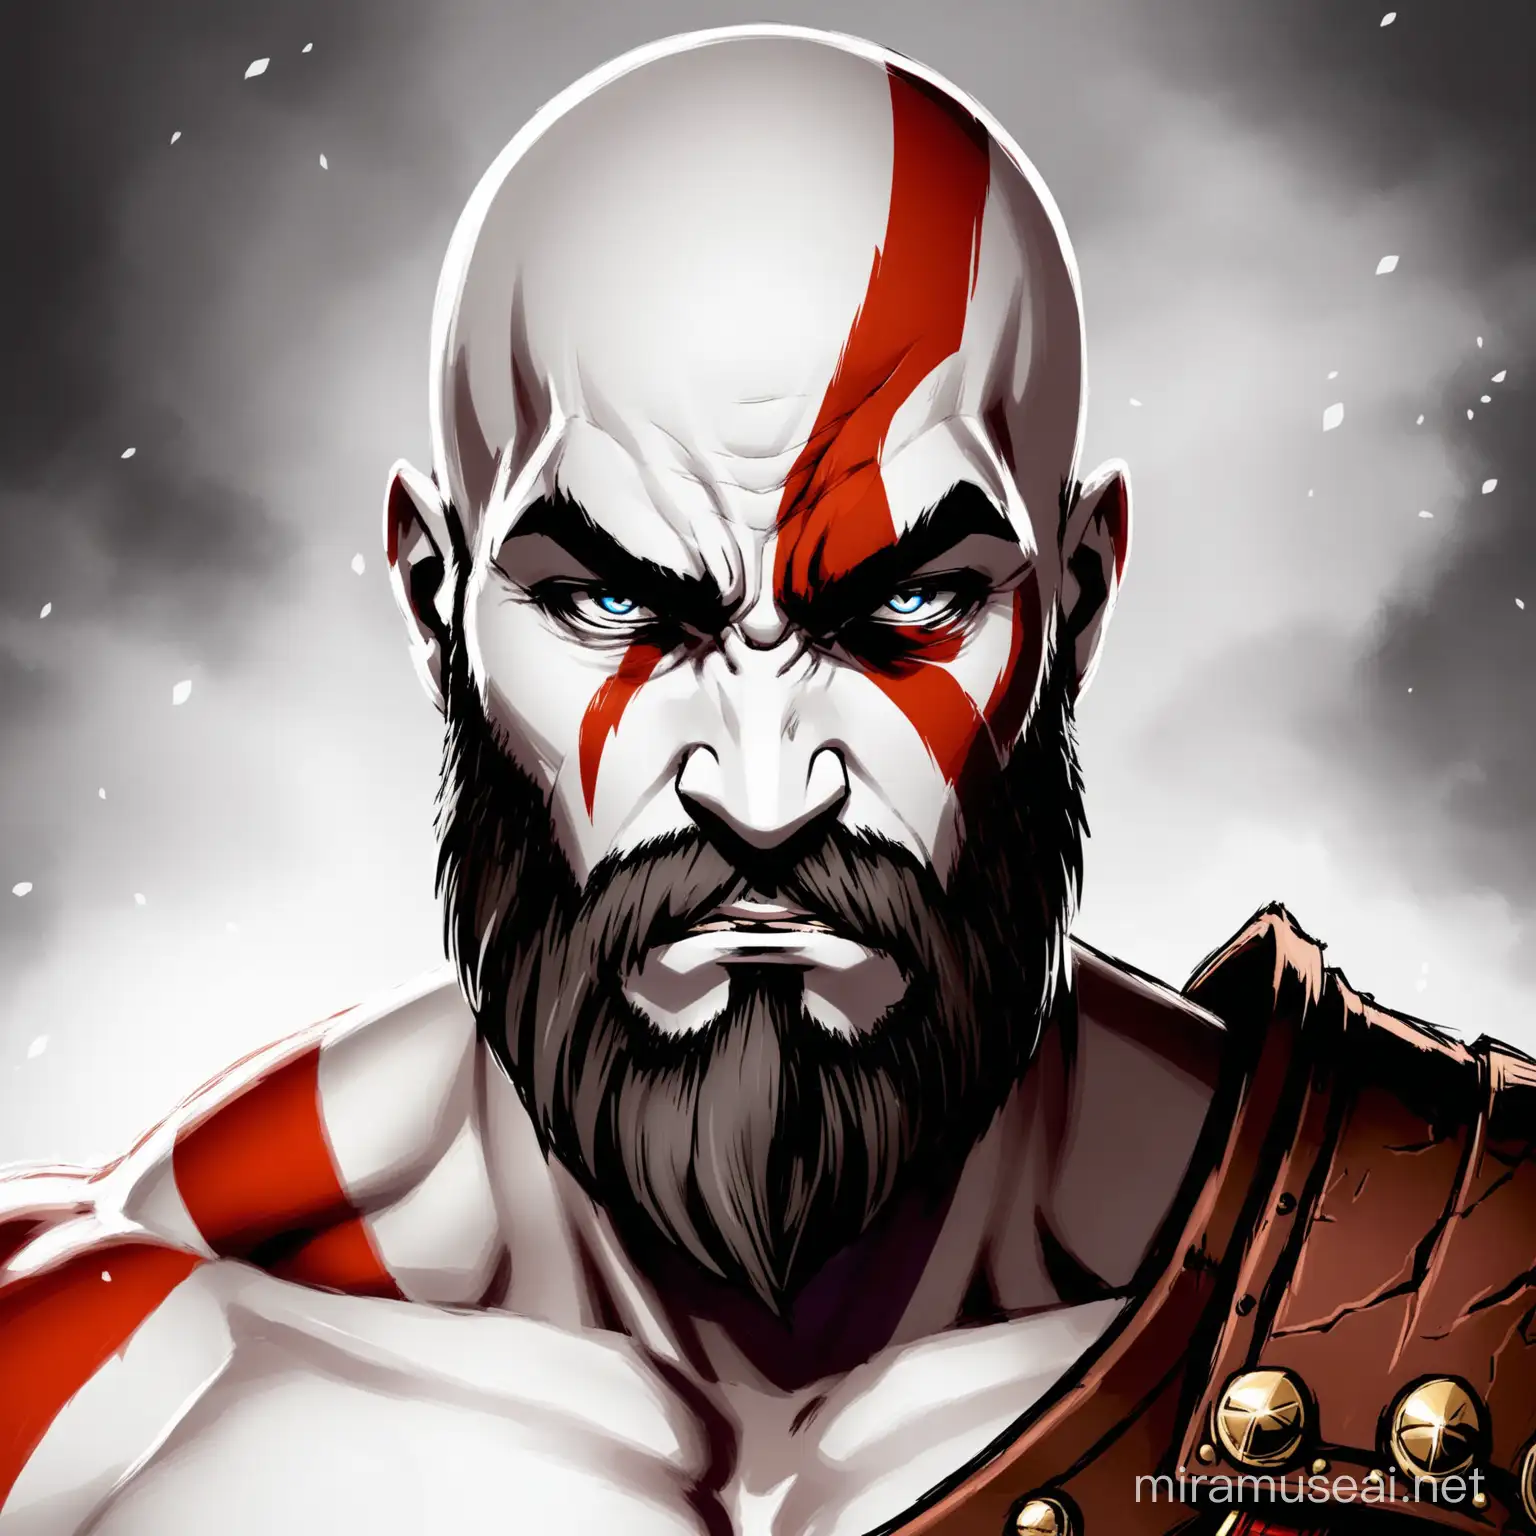 Kratos from God of War Ragnarok Facing the Viewer